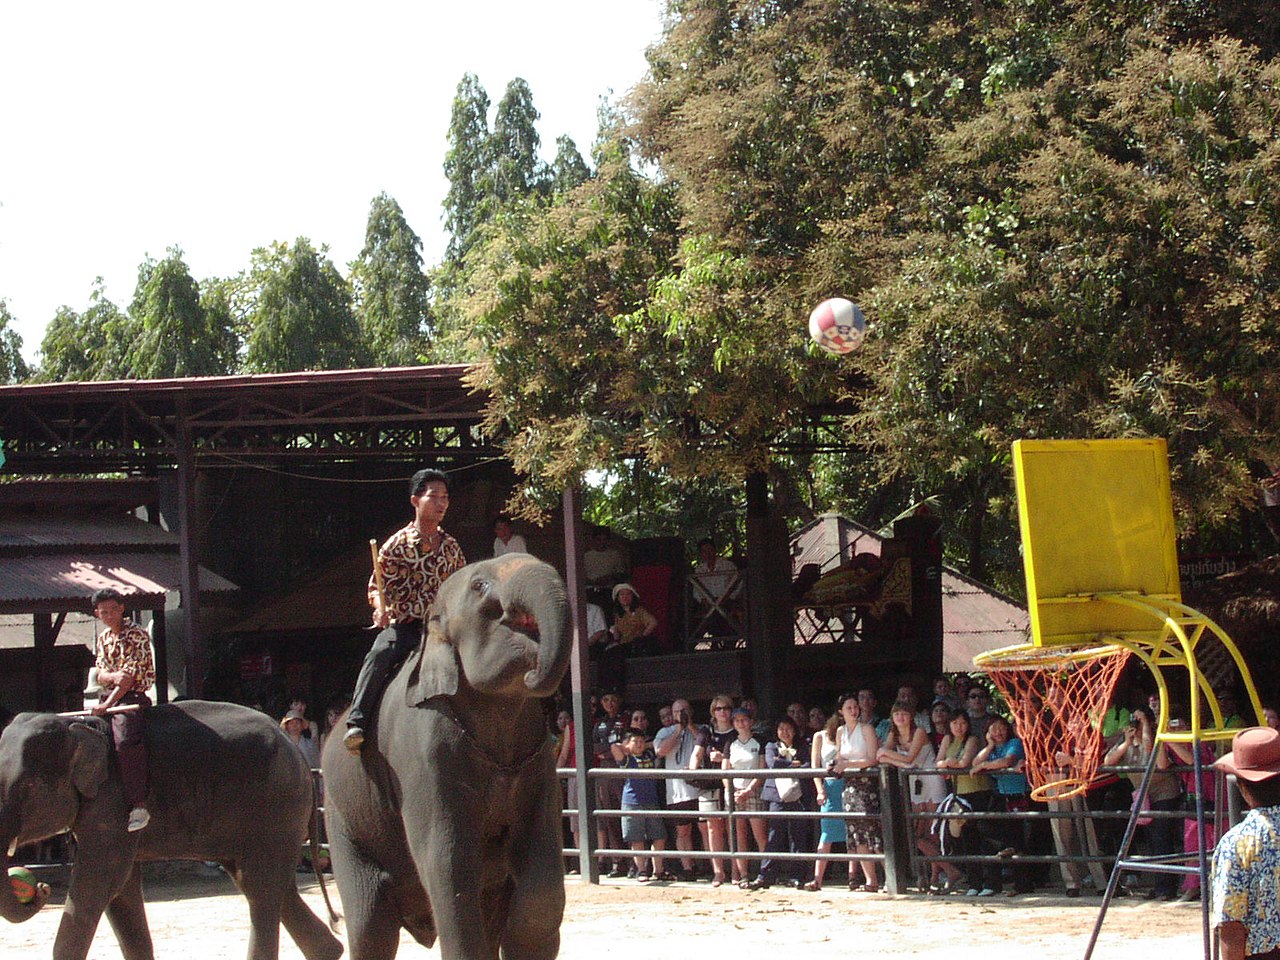 Elephants playing basketball at Nong Nooch Orchid Wonderland, Pattaya